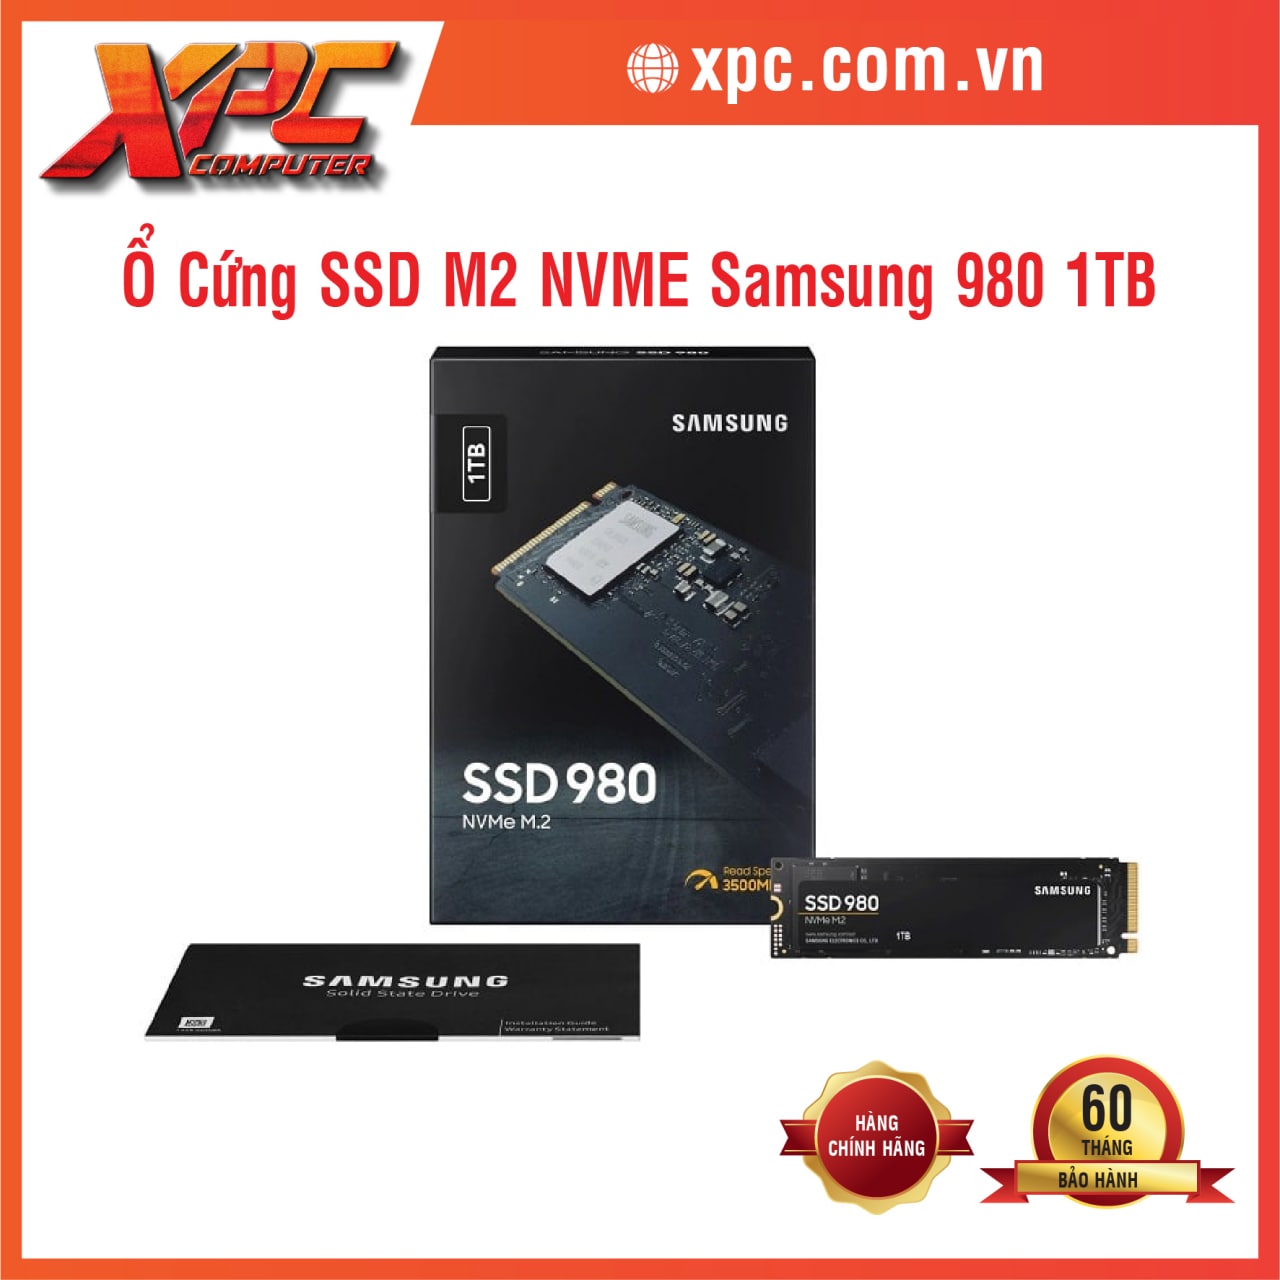 Samsung 980 1TB 1.jpg